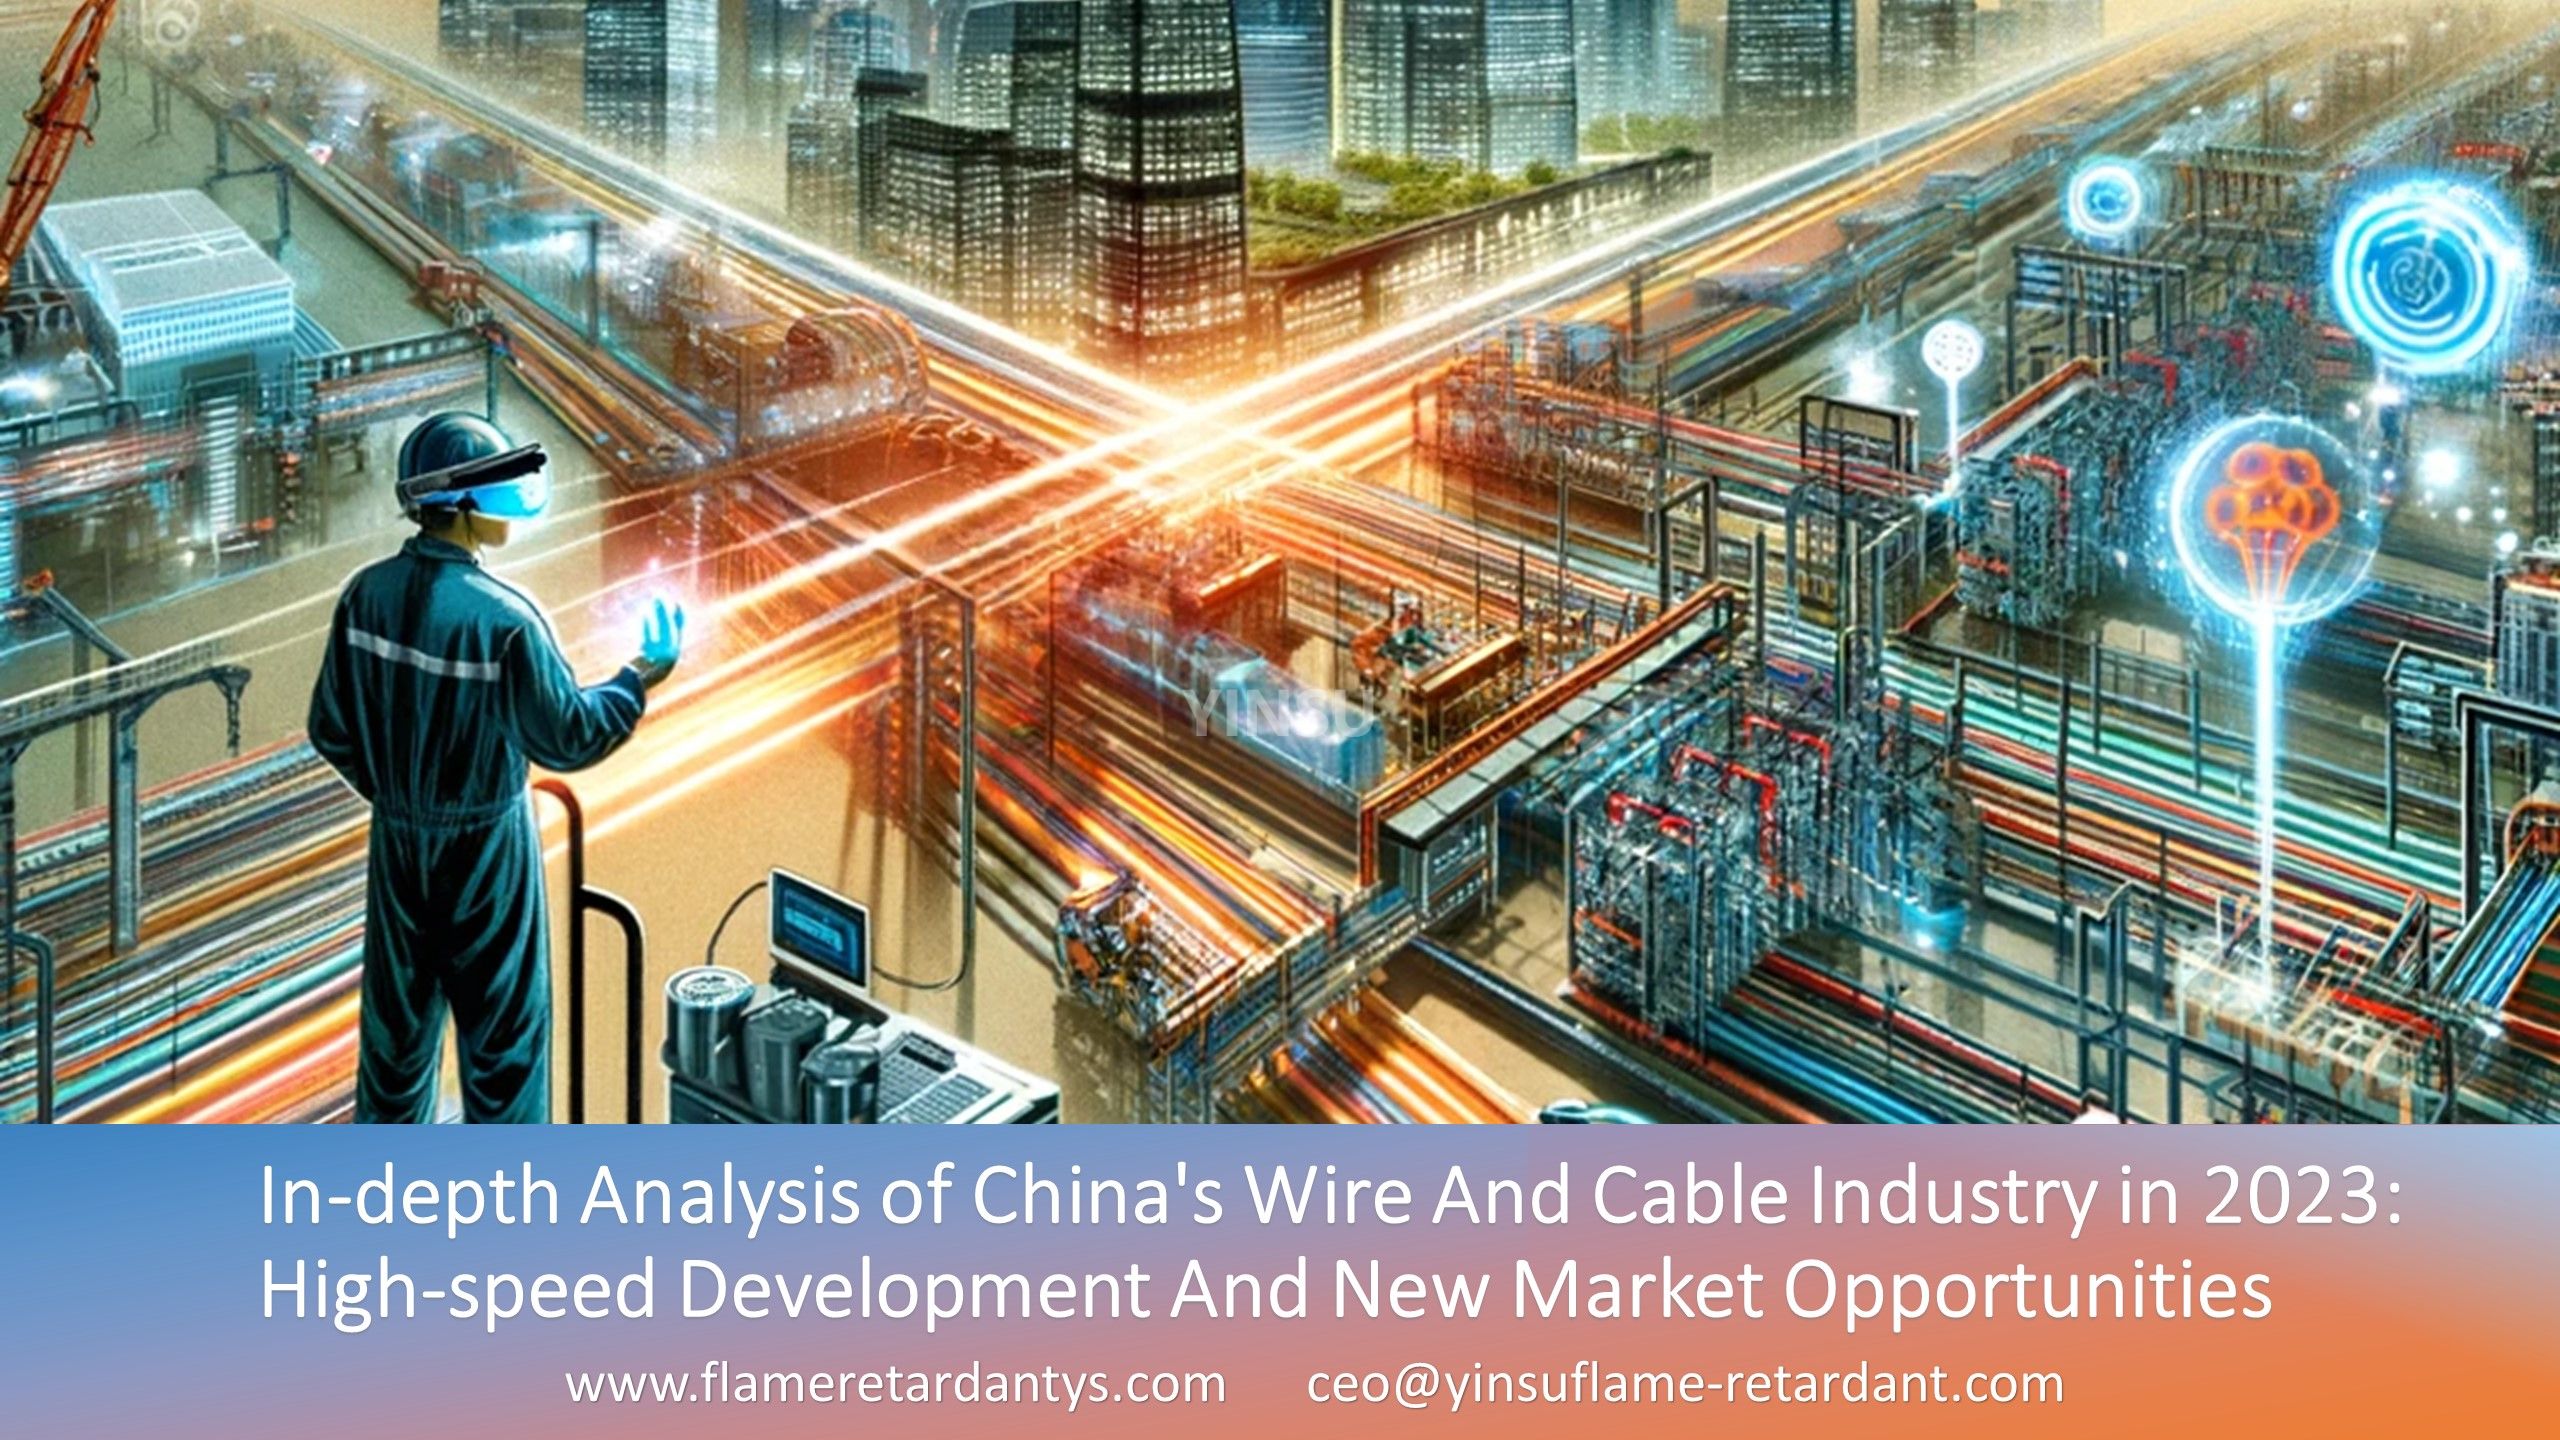 Análisis en profundidad de la industria de alambres y cables de China en 2023: desarrollo de alta velocidad y nuevas oportunidades de mercado